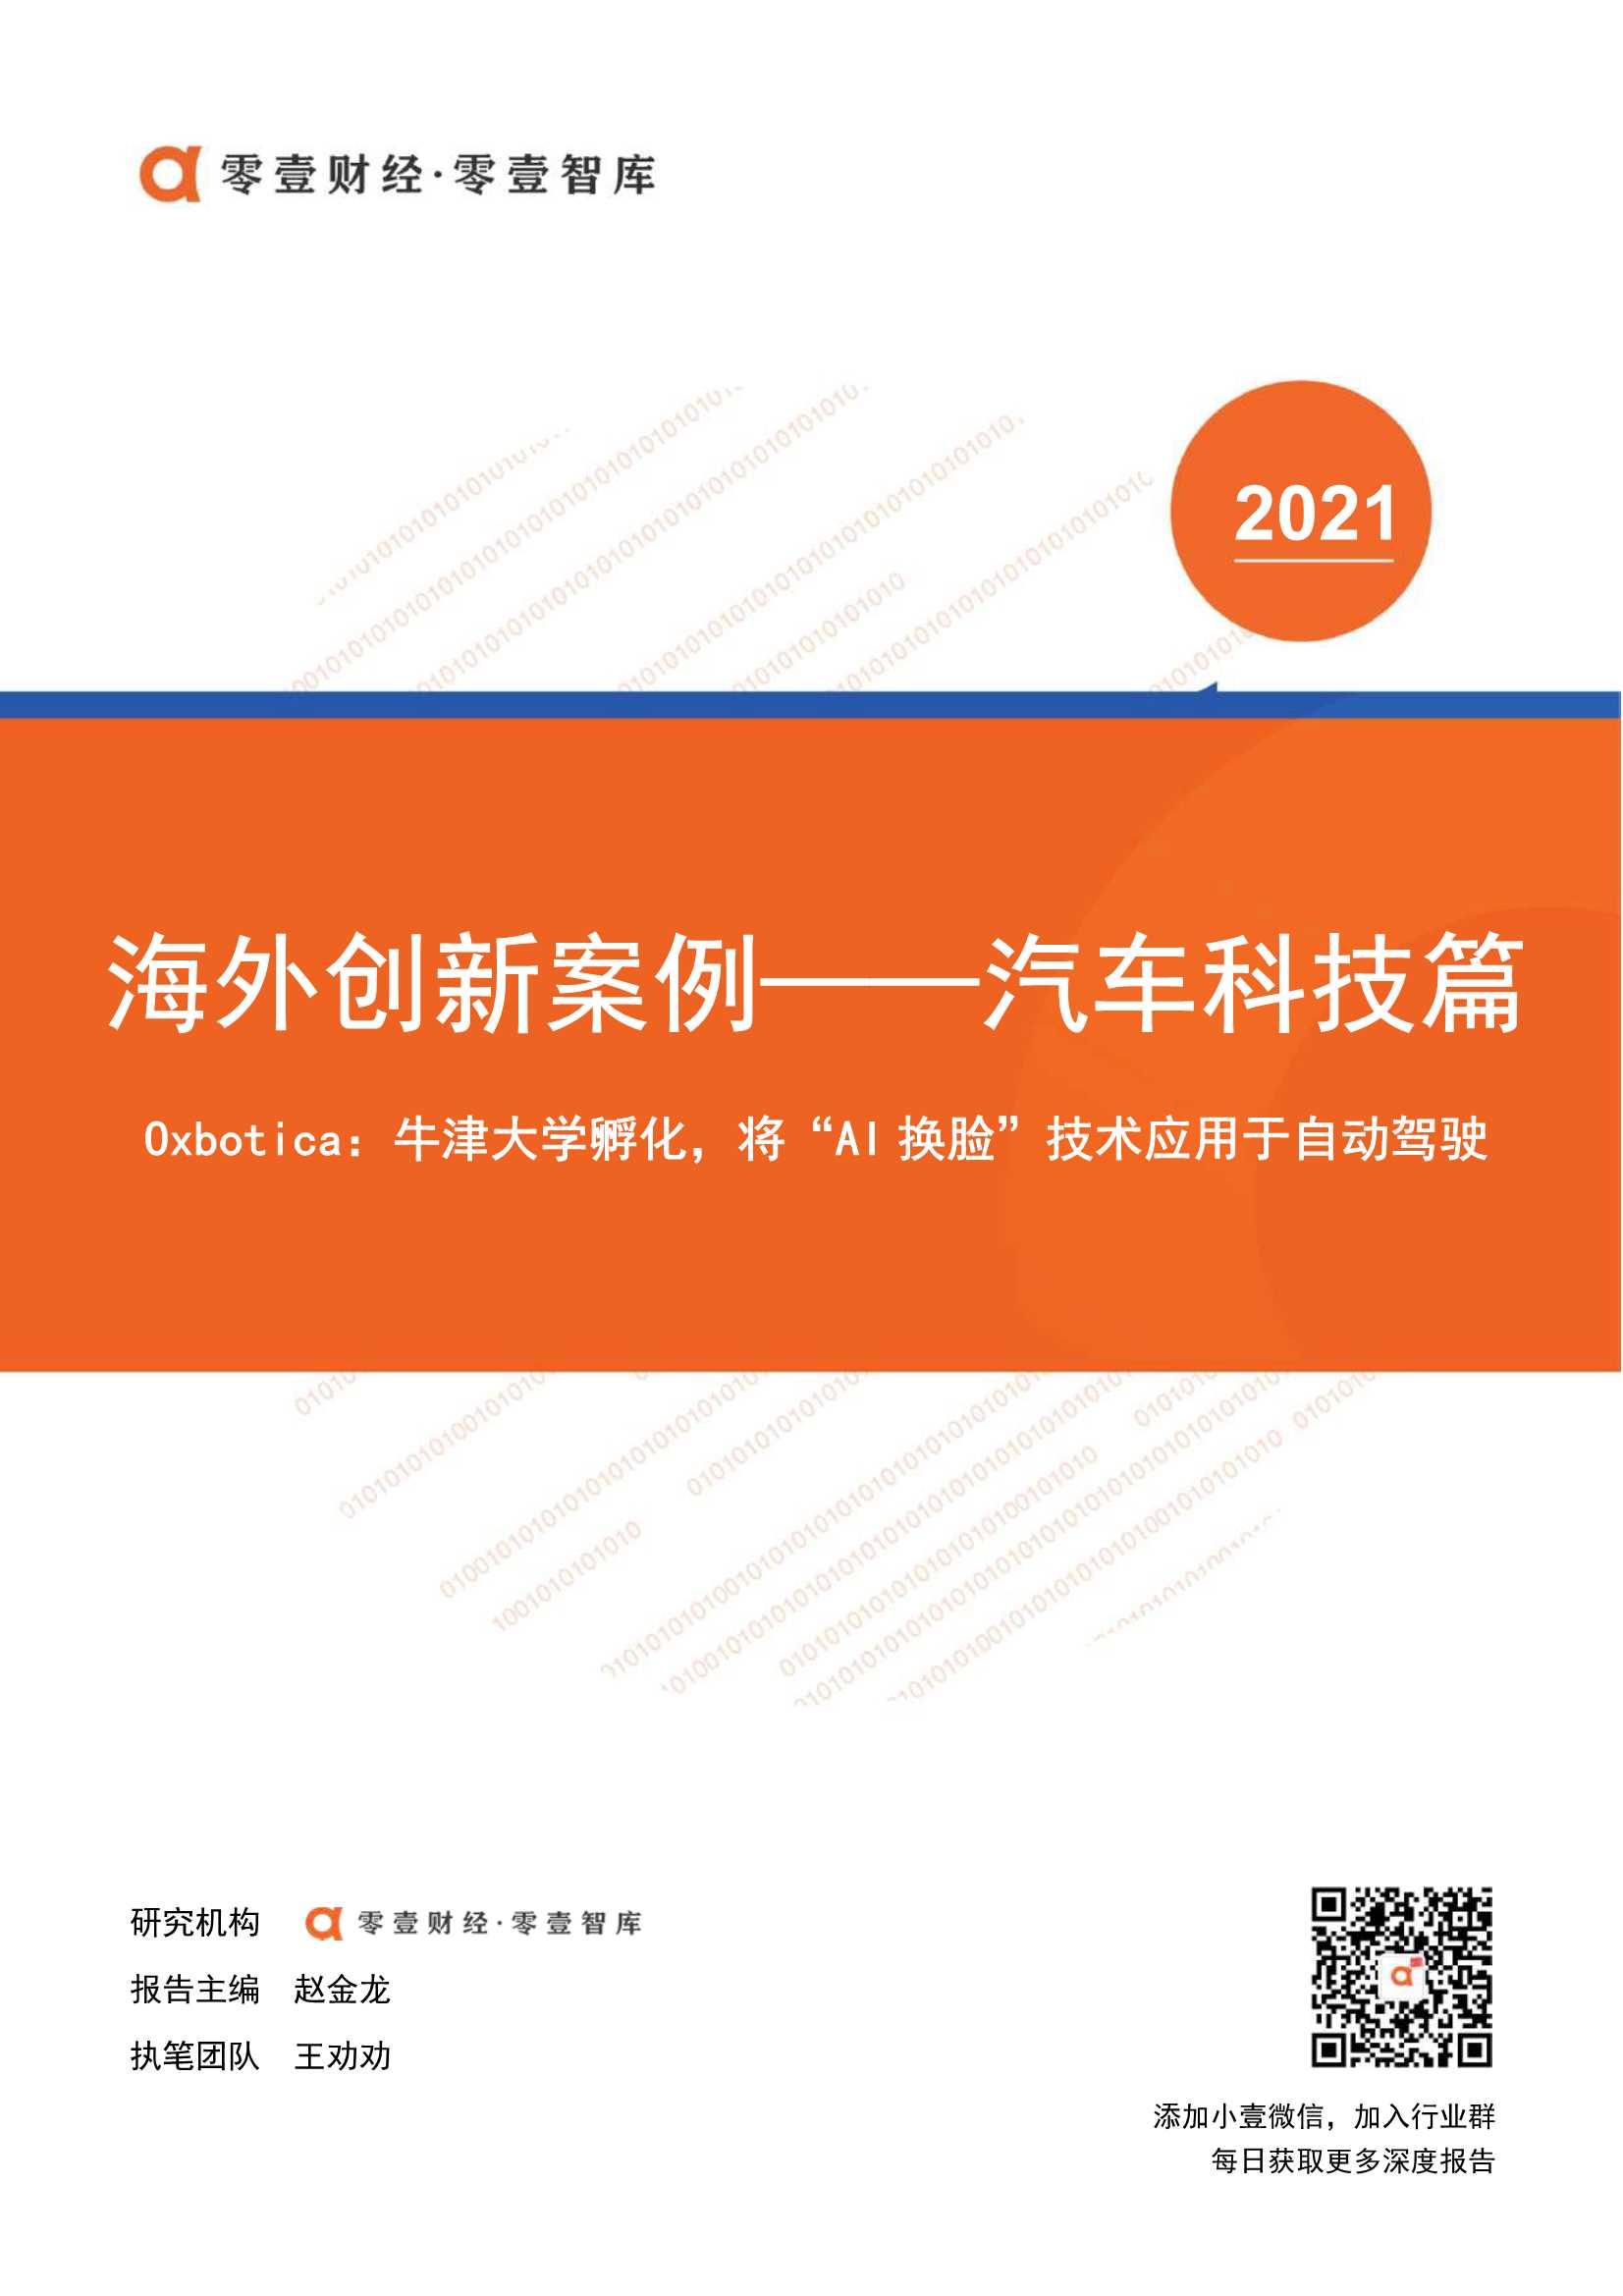 零壹智库-海外创新案例 Oxbotica：将“AI换脸”技术应用于自动驾驶-2021.09-9页